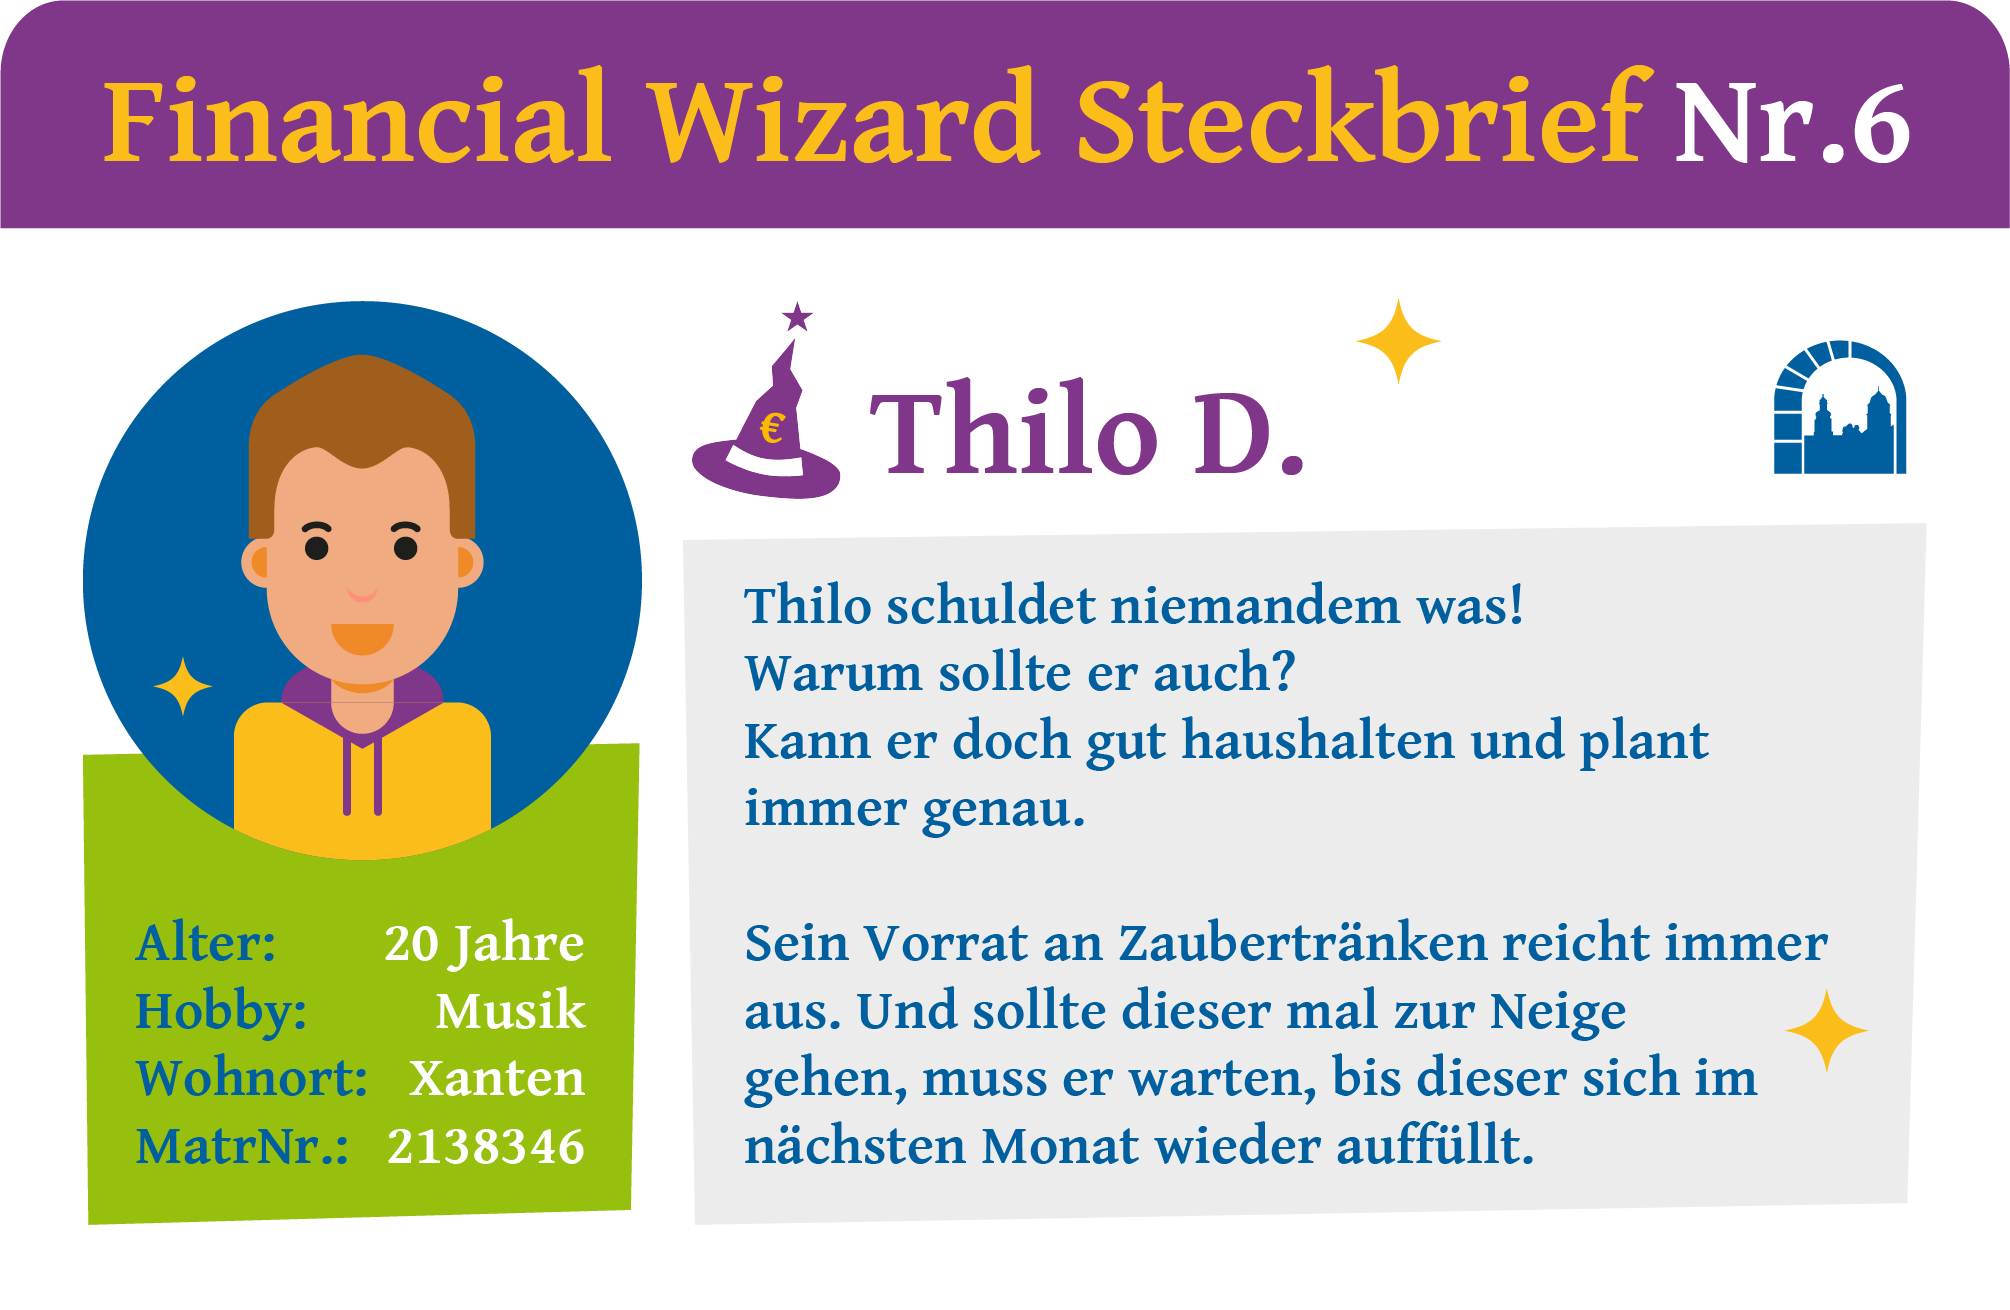 Steckbrief Nr. 6 zur Financial Wizard Challenge 